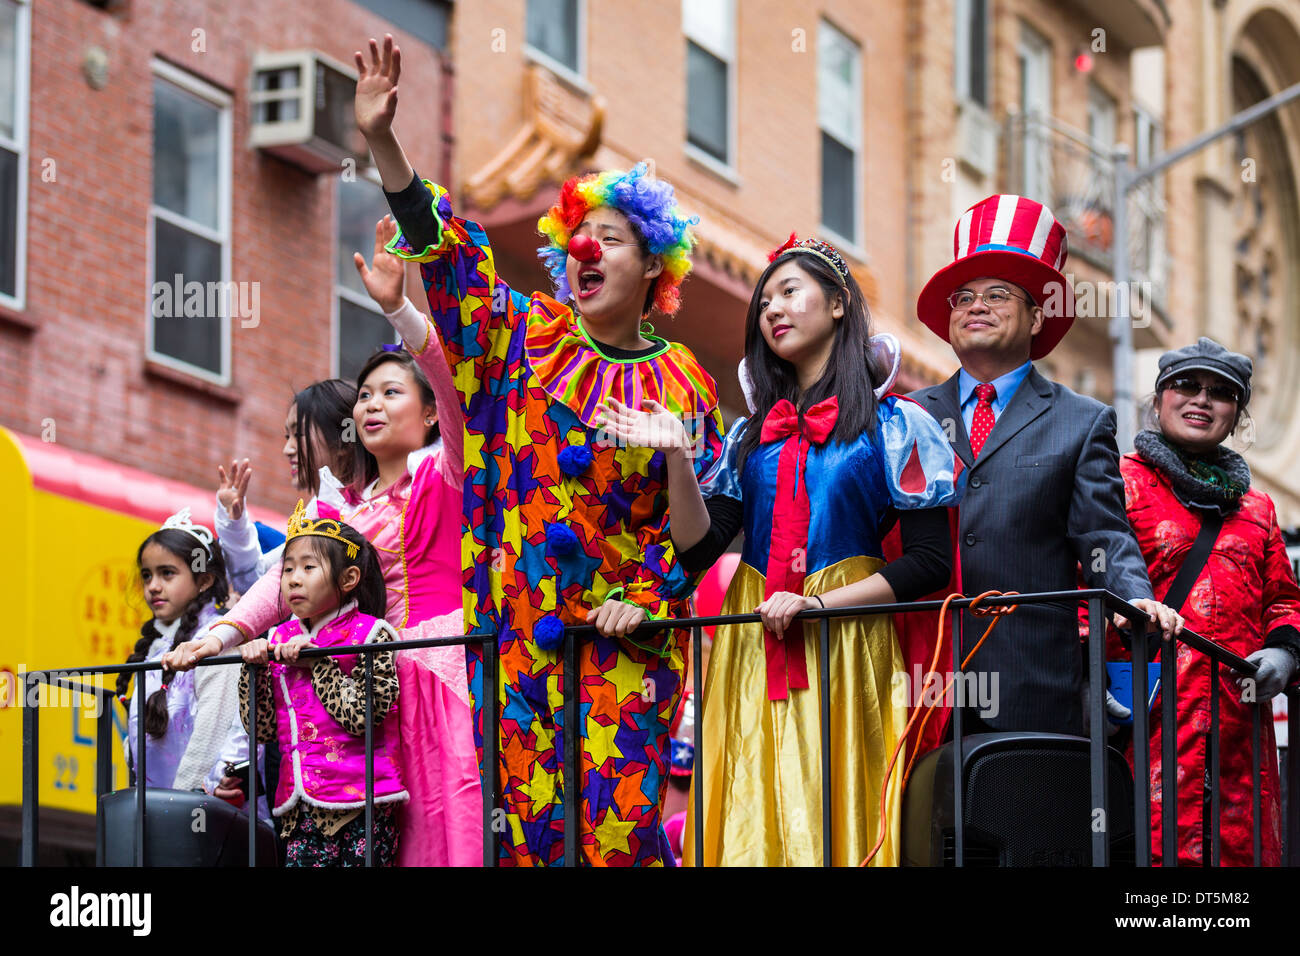 Giovane uomo vestito con un costume da clown saluta la folla presso il nuovo anno lunare Festival a Chinatown Foto Stock